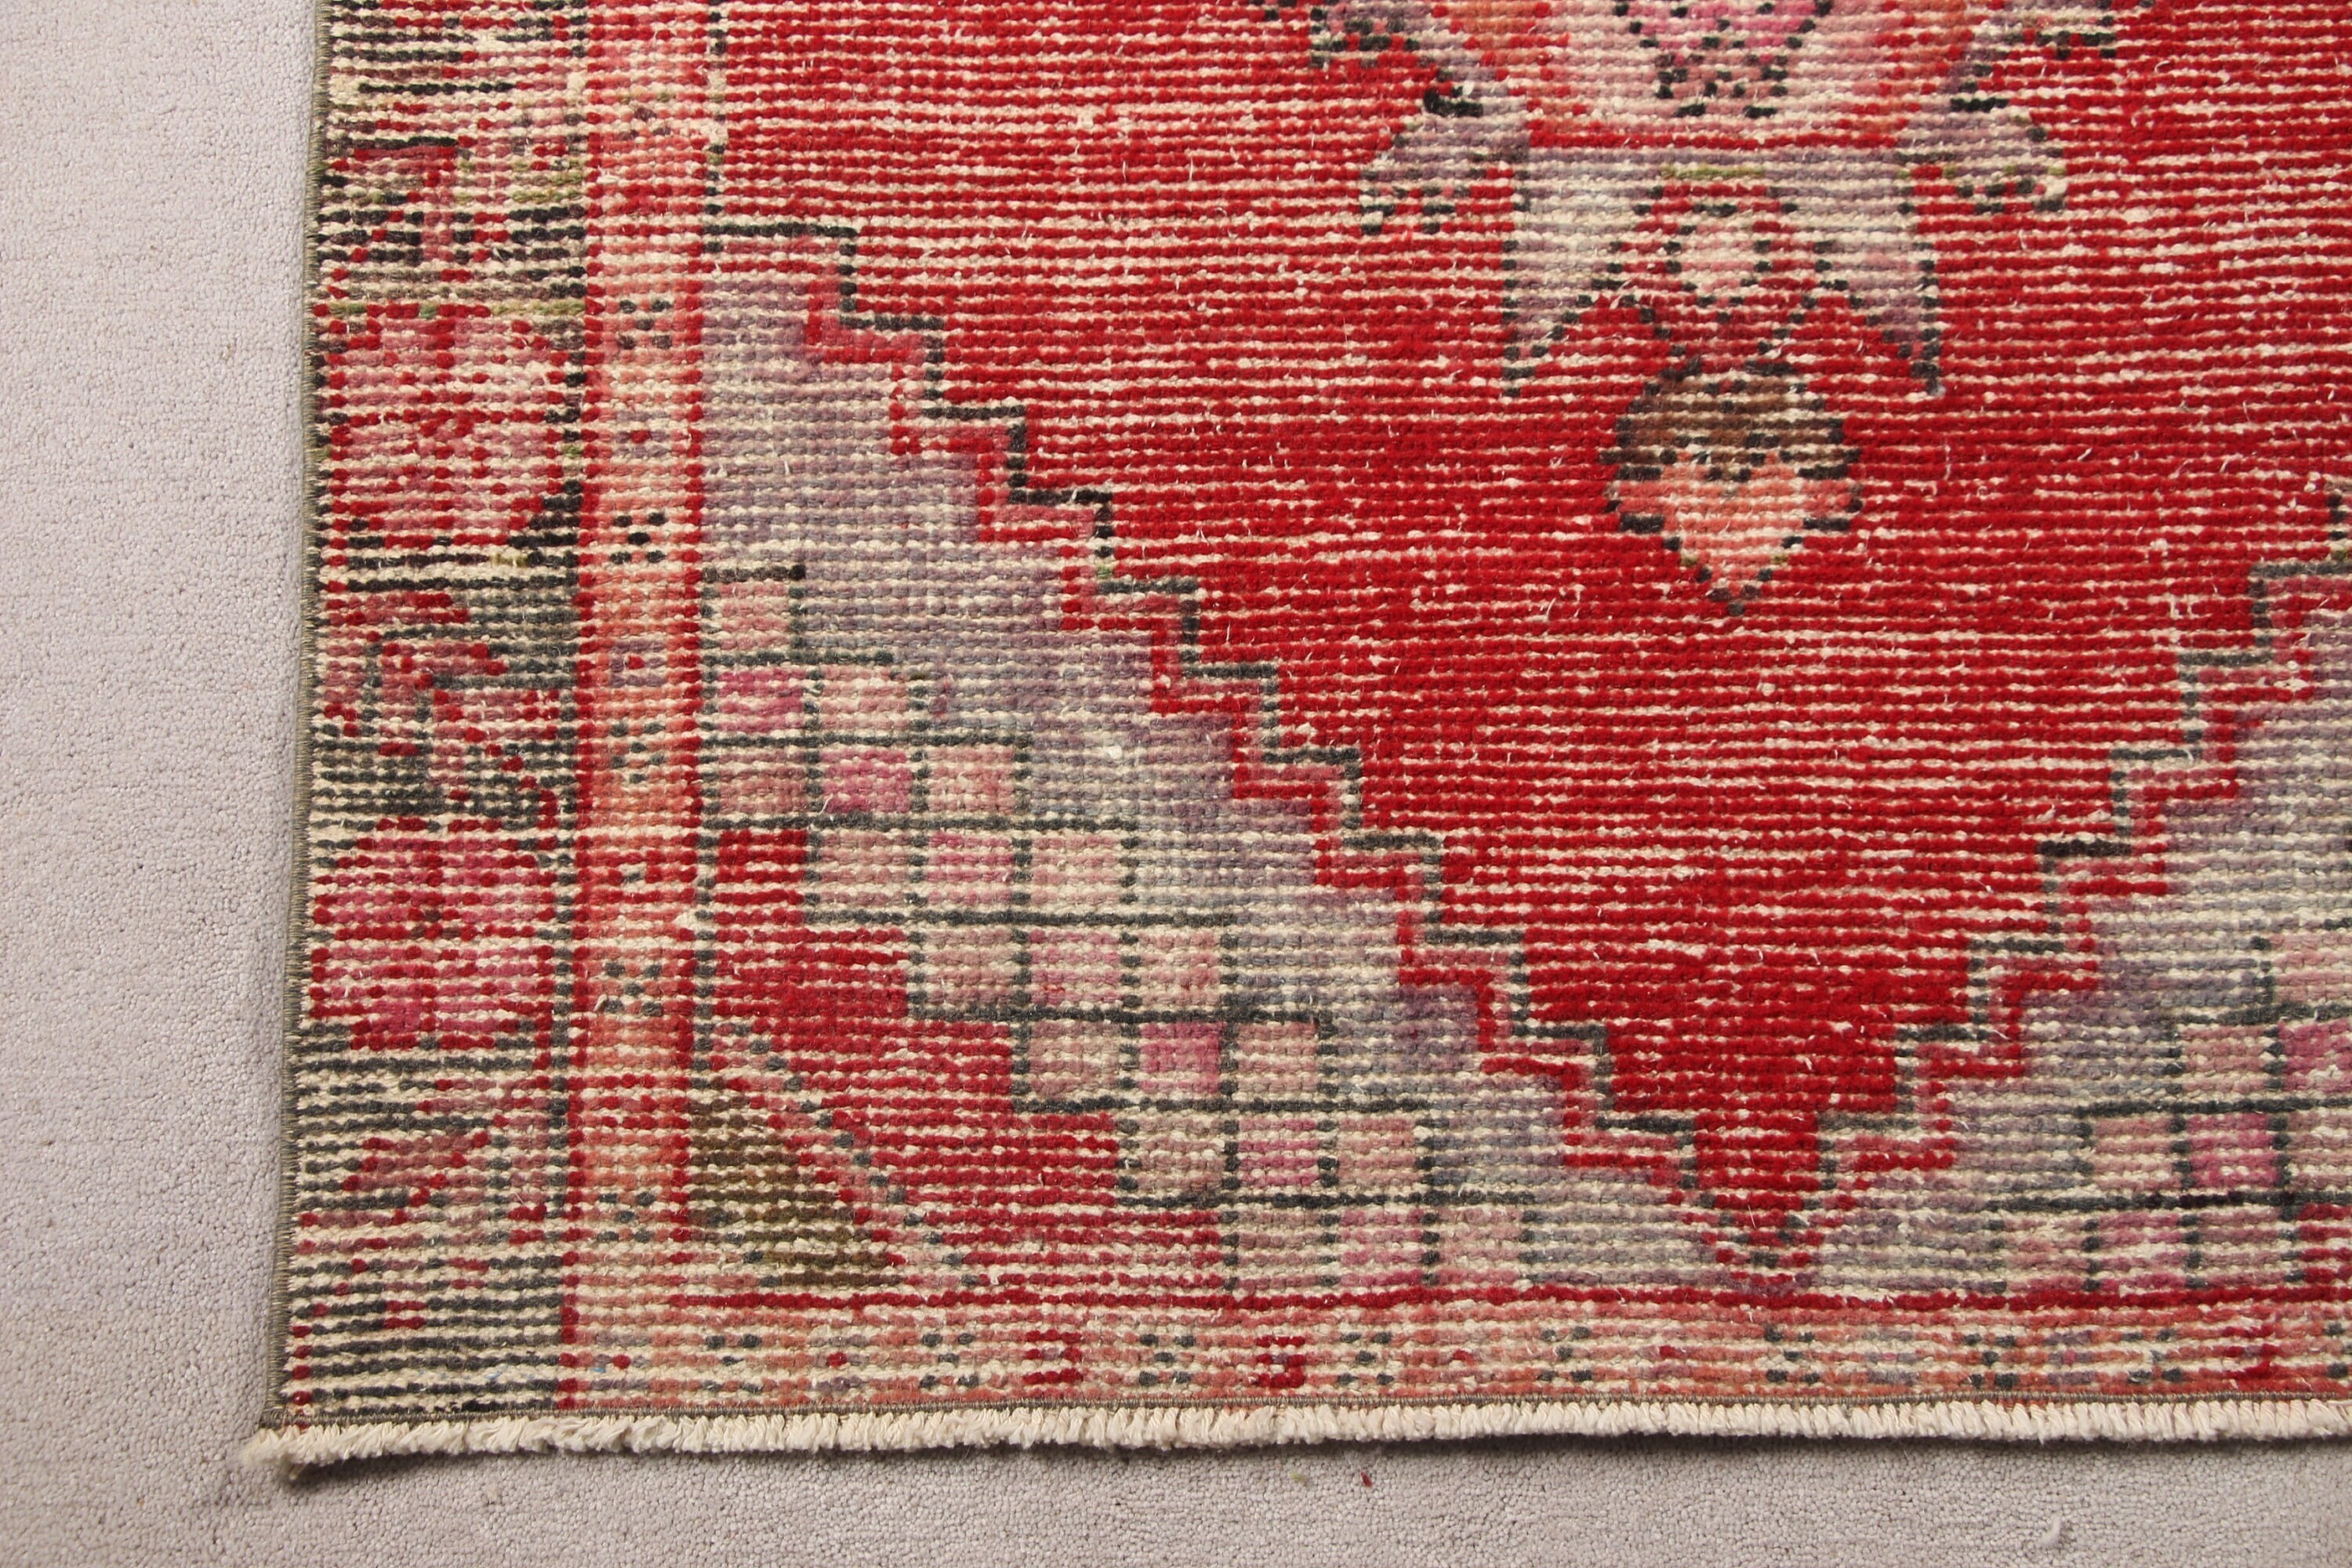 Oriental Rug, Moroccan Rug, Vintage Rug, Red Cool Rugs, Rugs for Corridor, 2.8x8.3 ft Runner Rugs, Kitchen Rug, Corridor Rugs, Turkish Rug